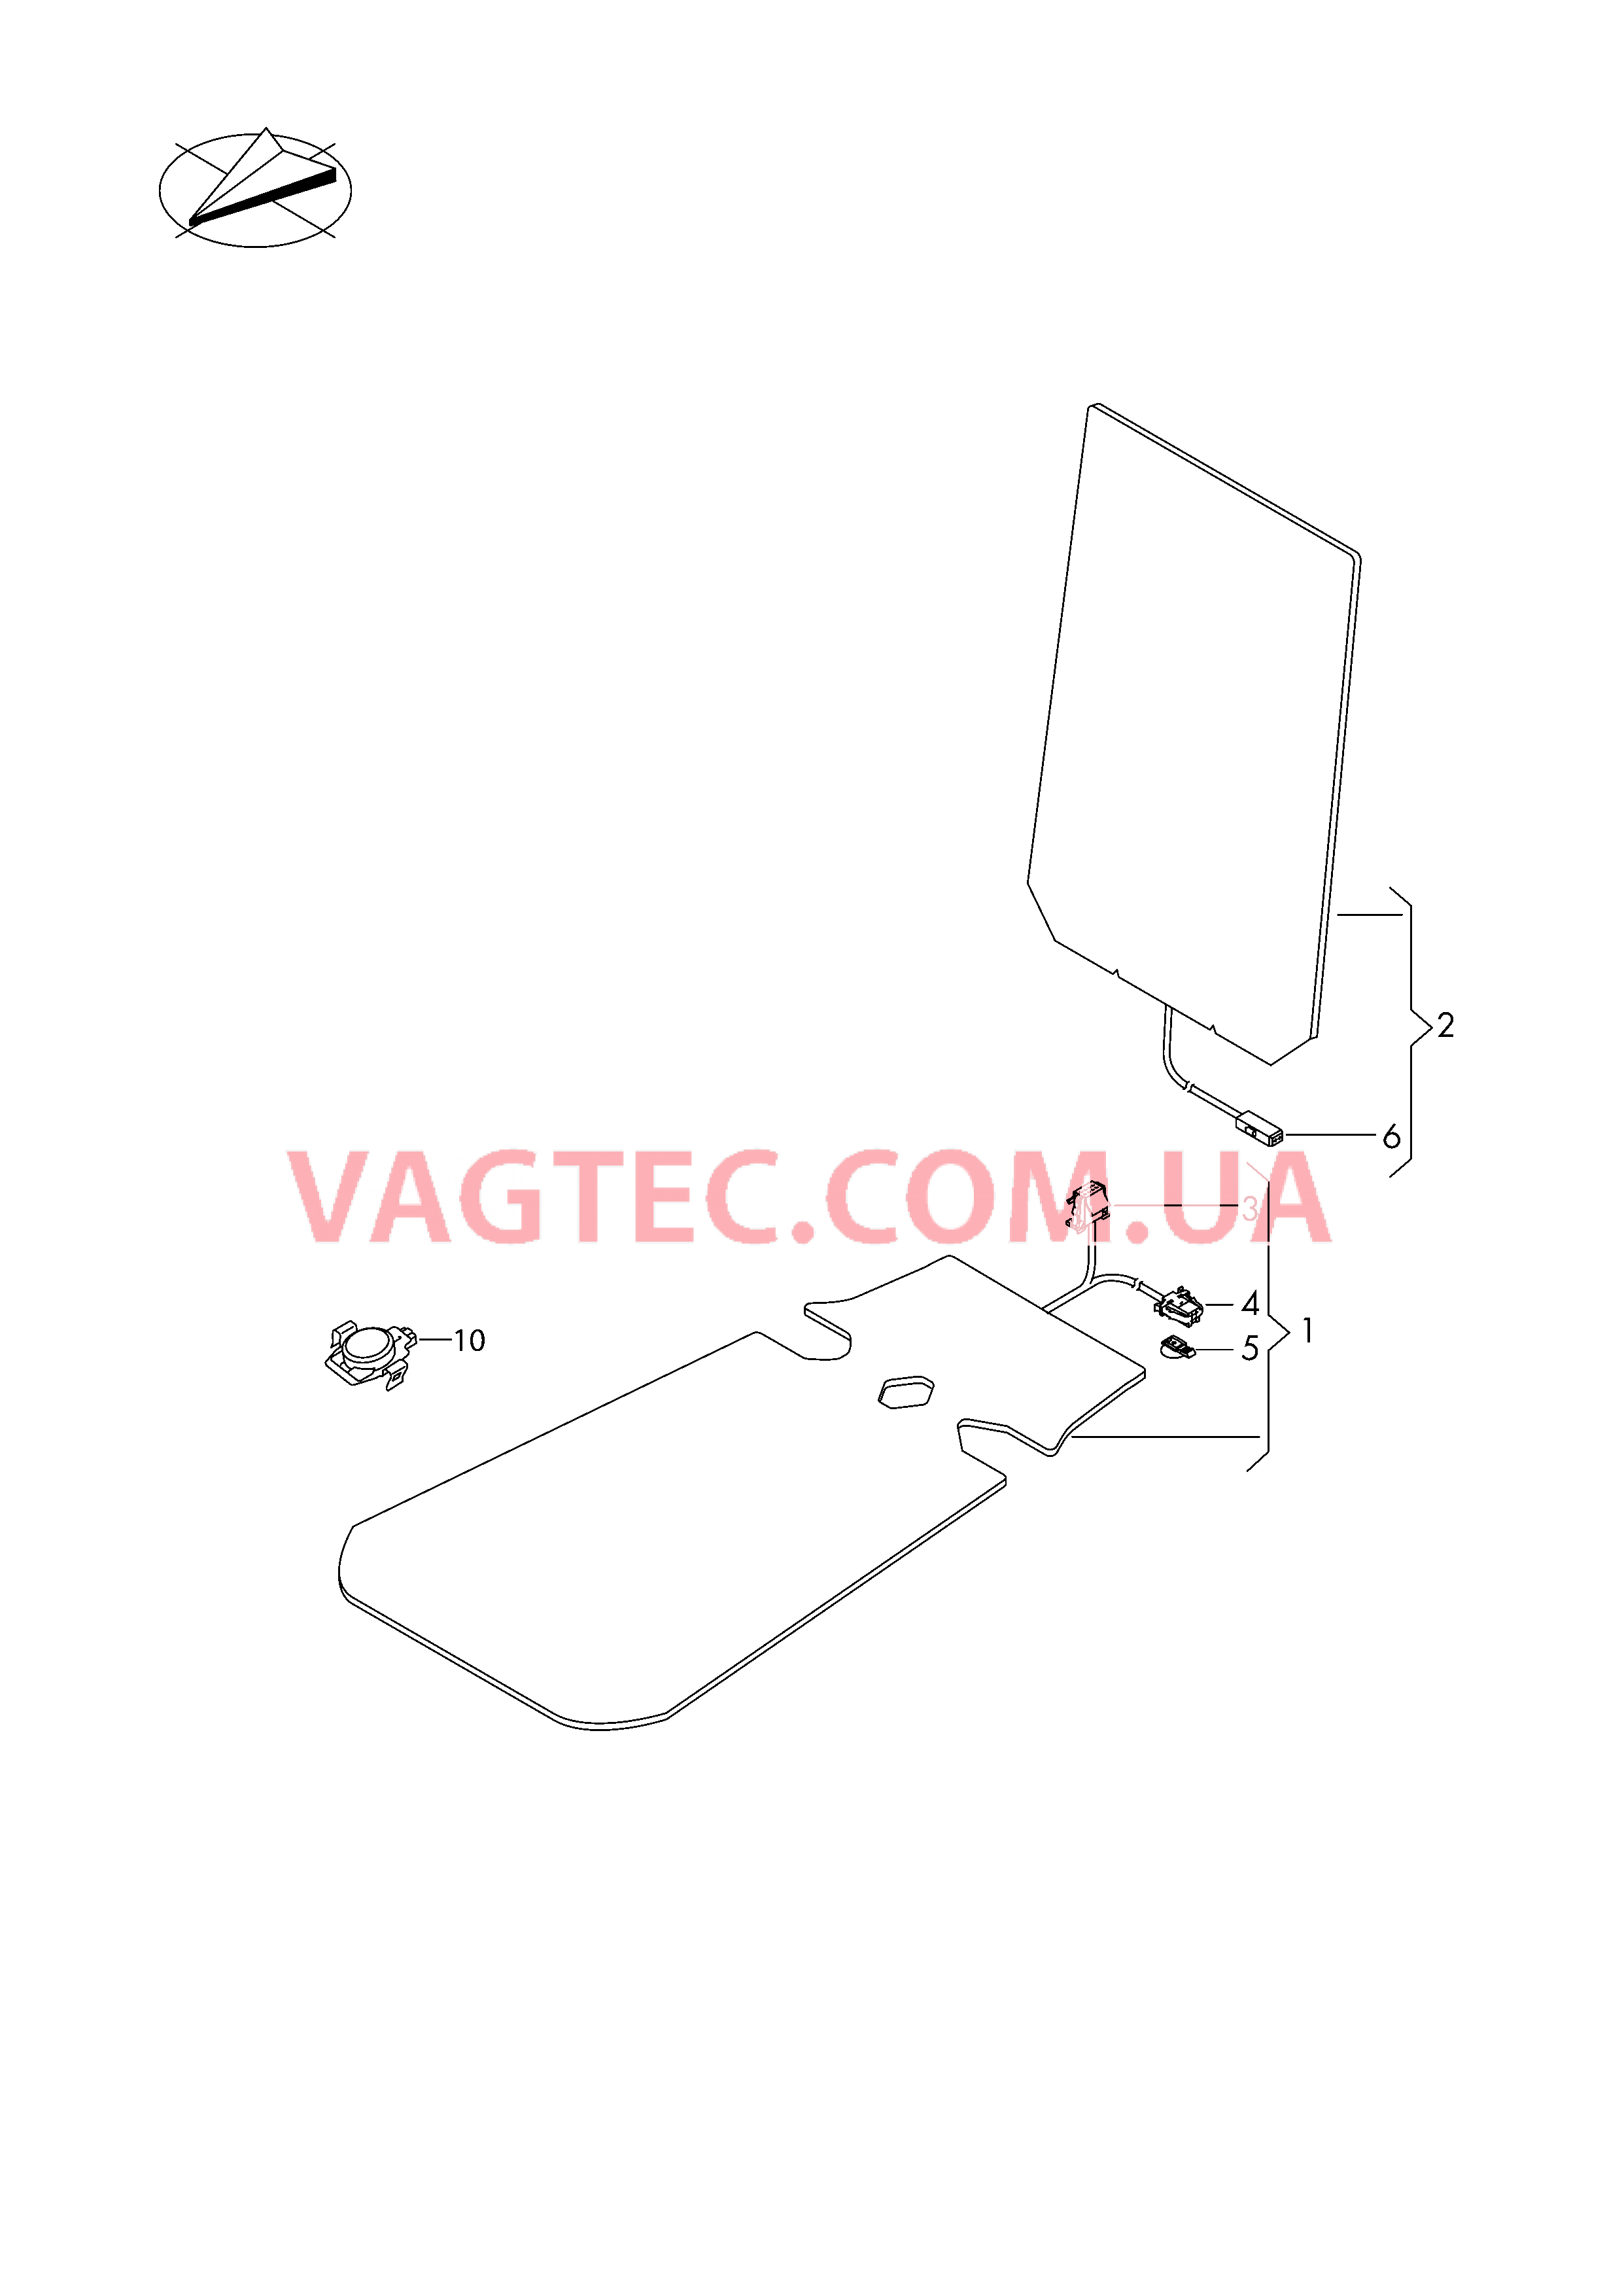 Электродетали для обогрева подушки и спинки сиденья  Вставка распознавания занятости сиденья  для VOLKSWAGEN Tiguan 2016-1